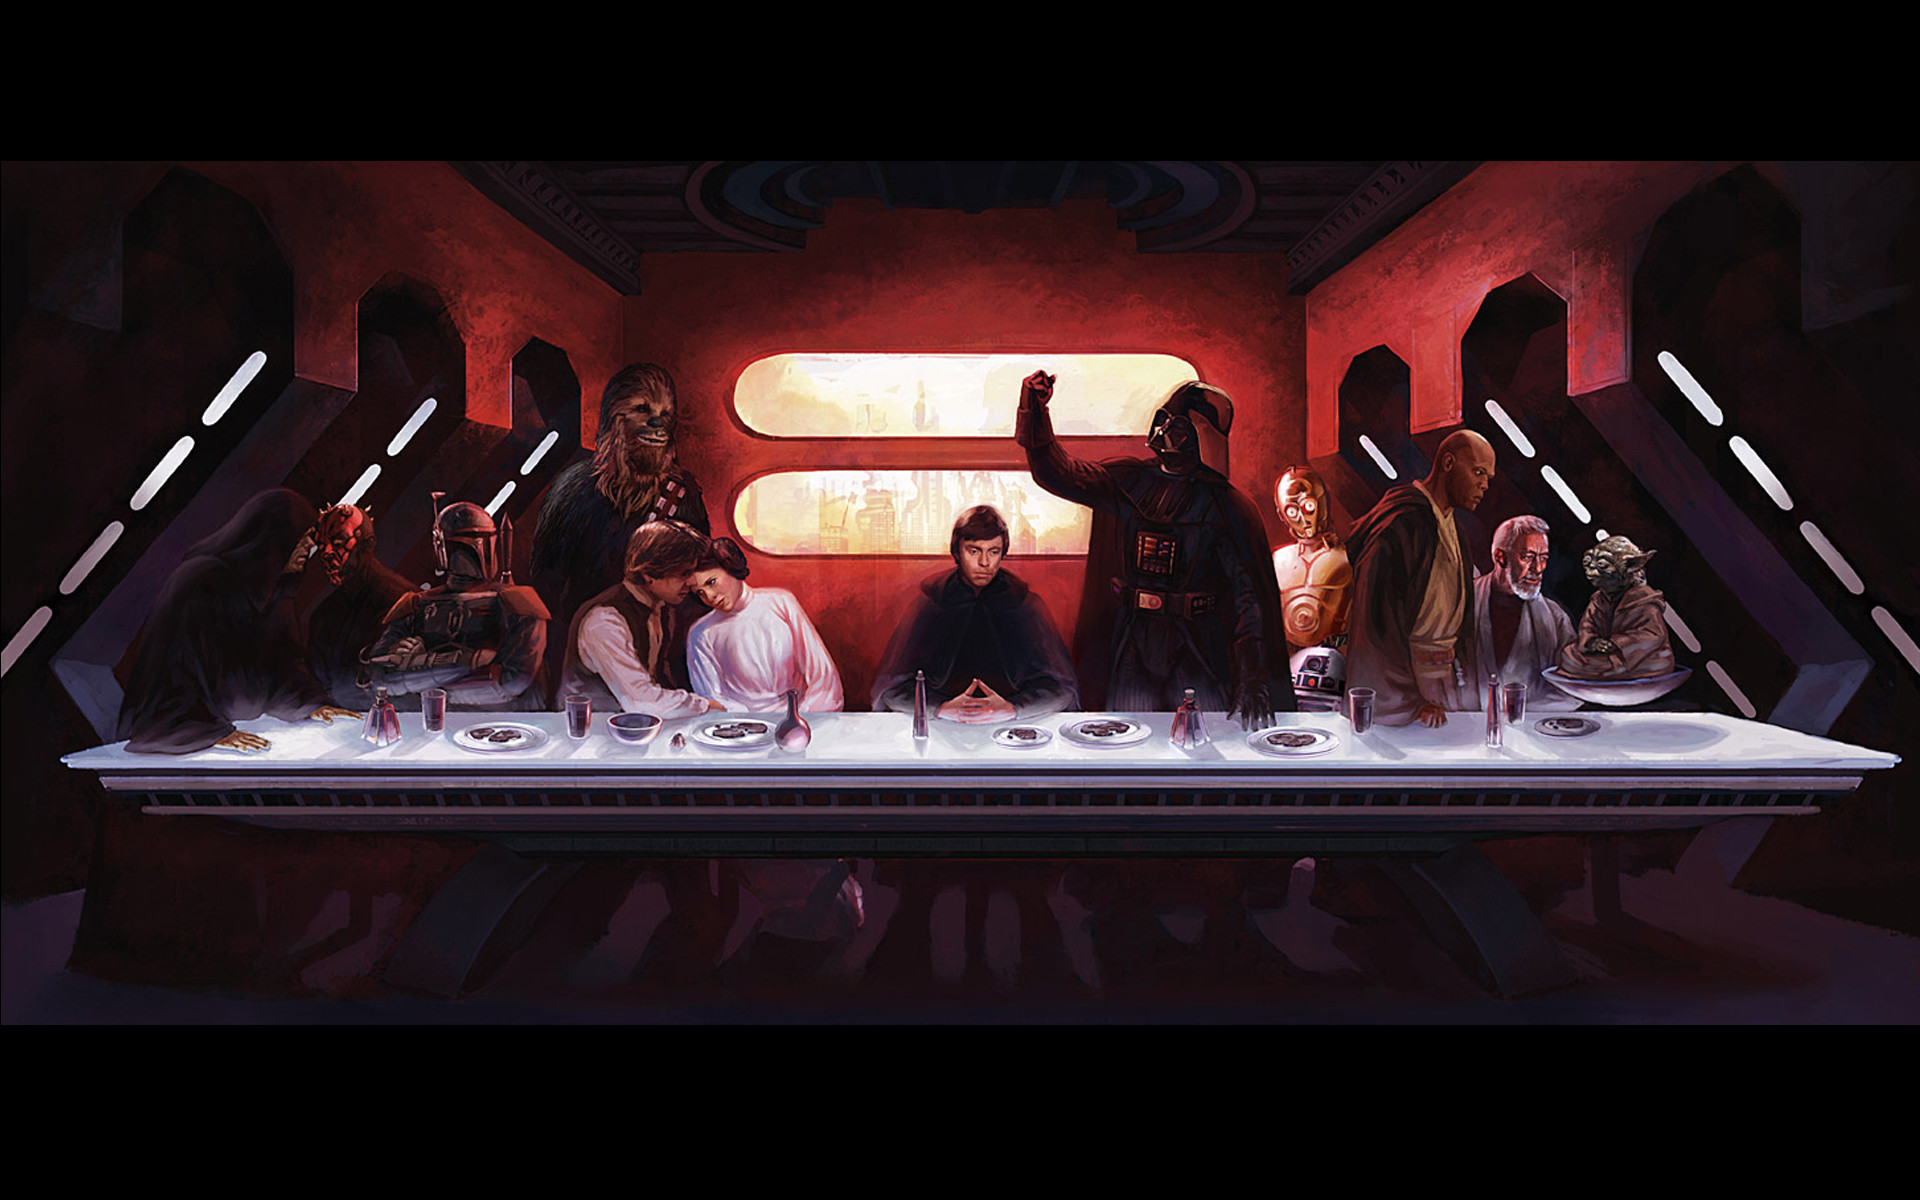 Top Ten Star Wars Wallpapers